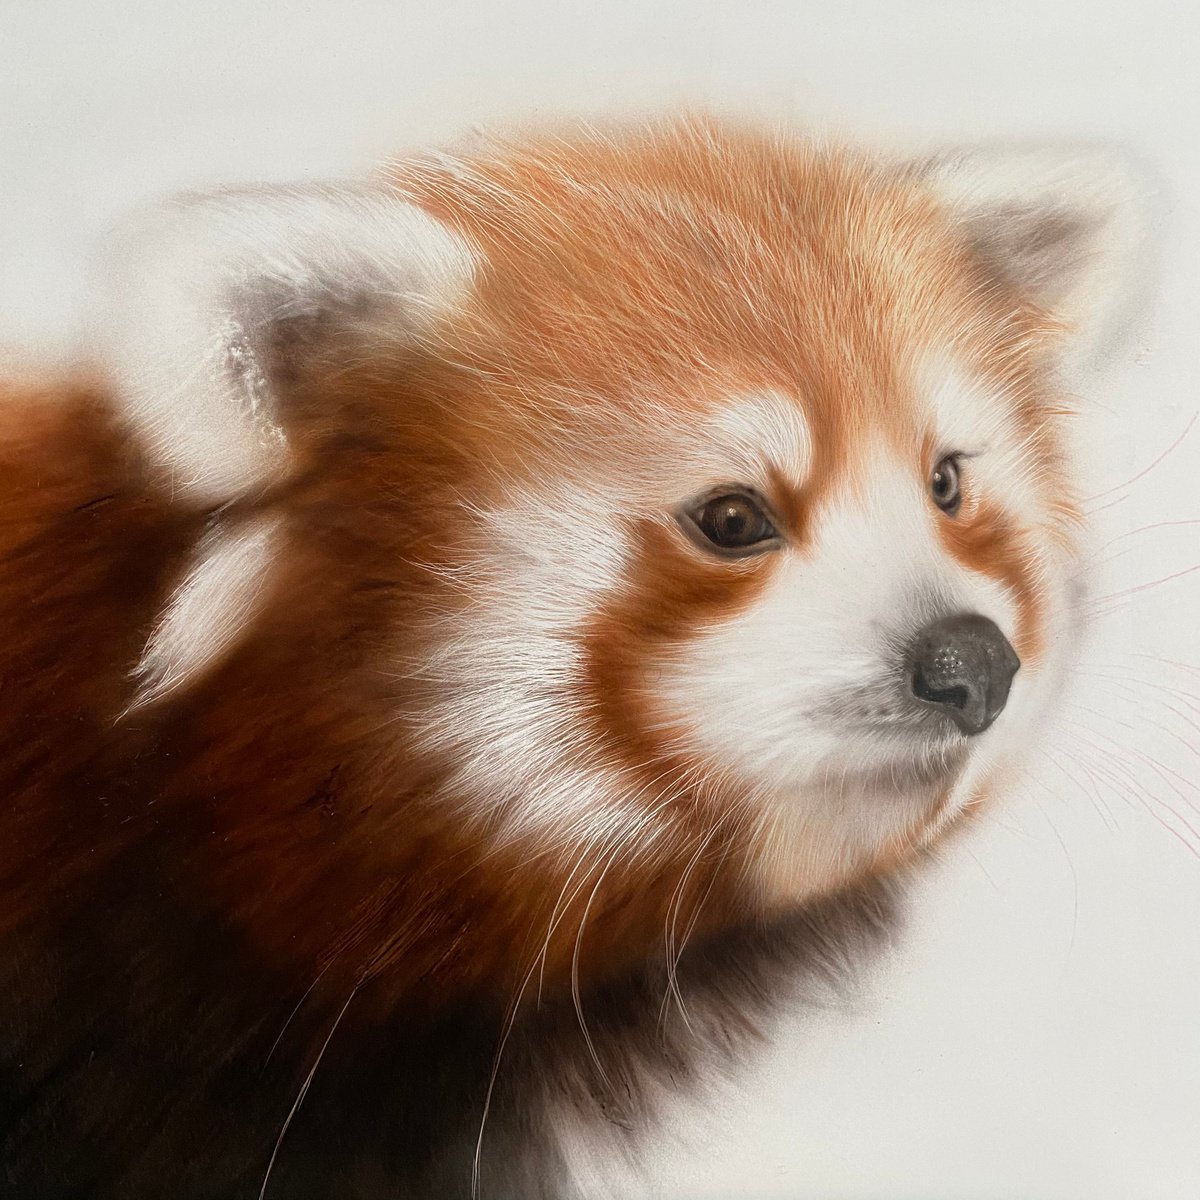 Red panda by Dolgor Dugarova